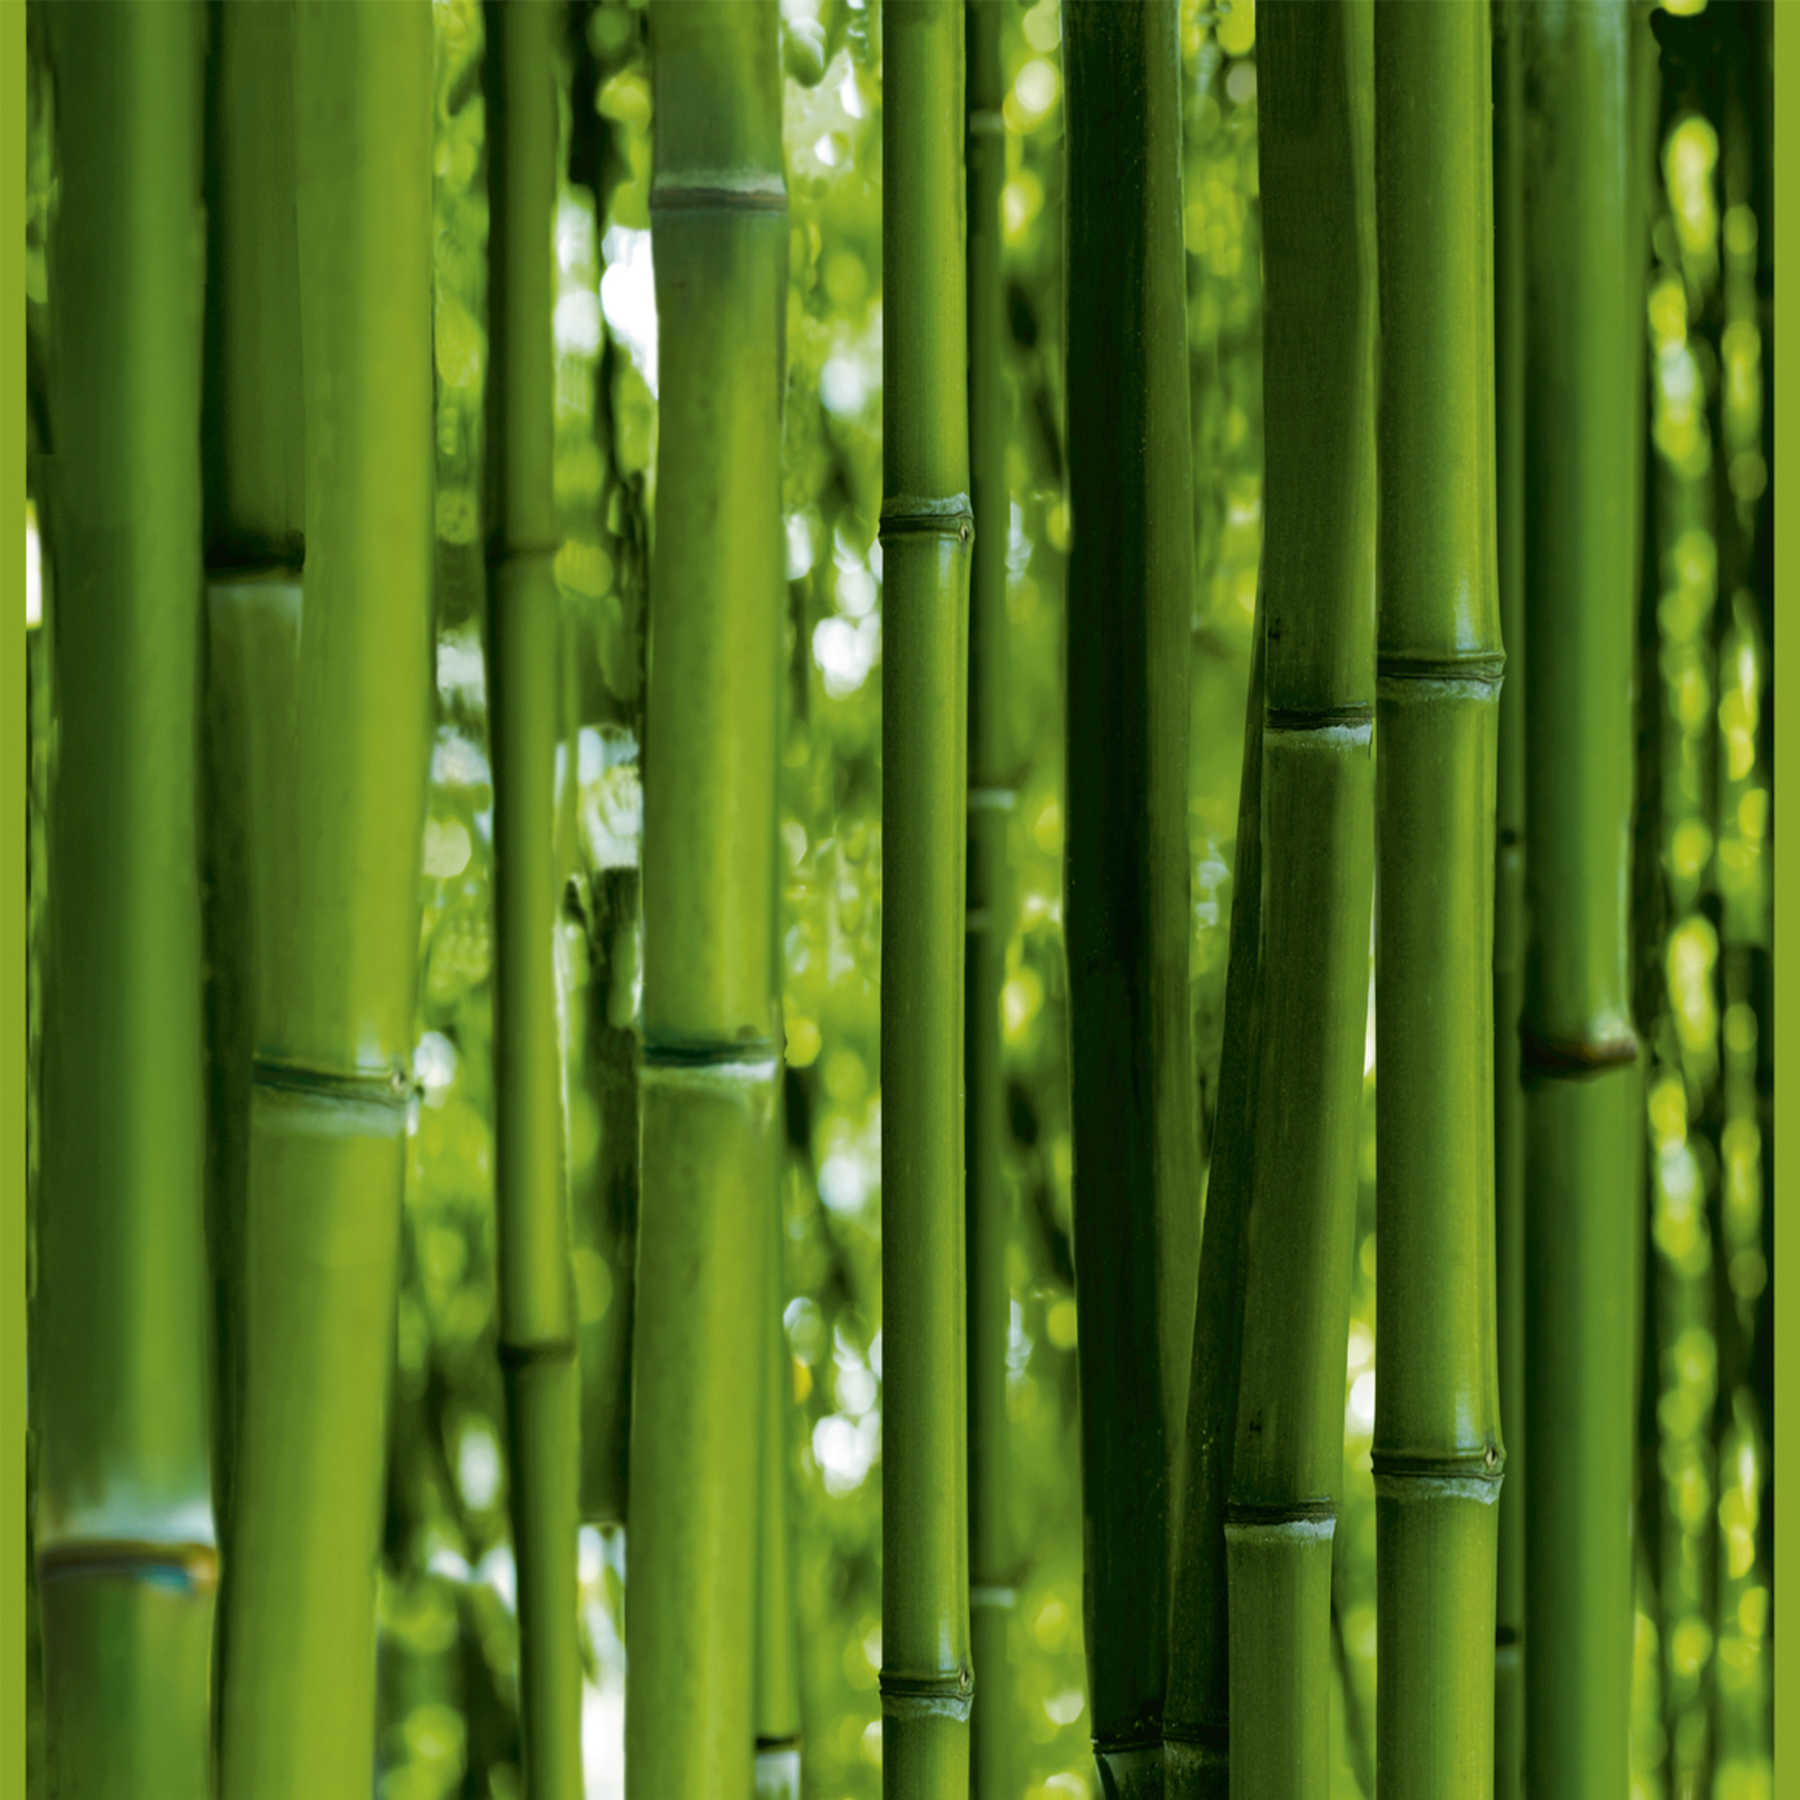             Zelfklevend Pop Up Behangpaneel met Bamboe Bos - Groen
        